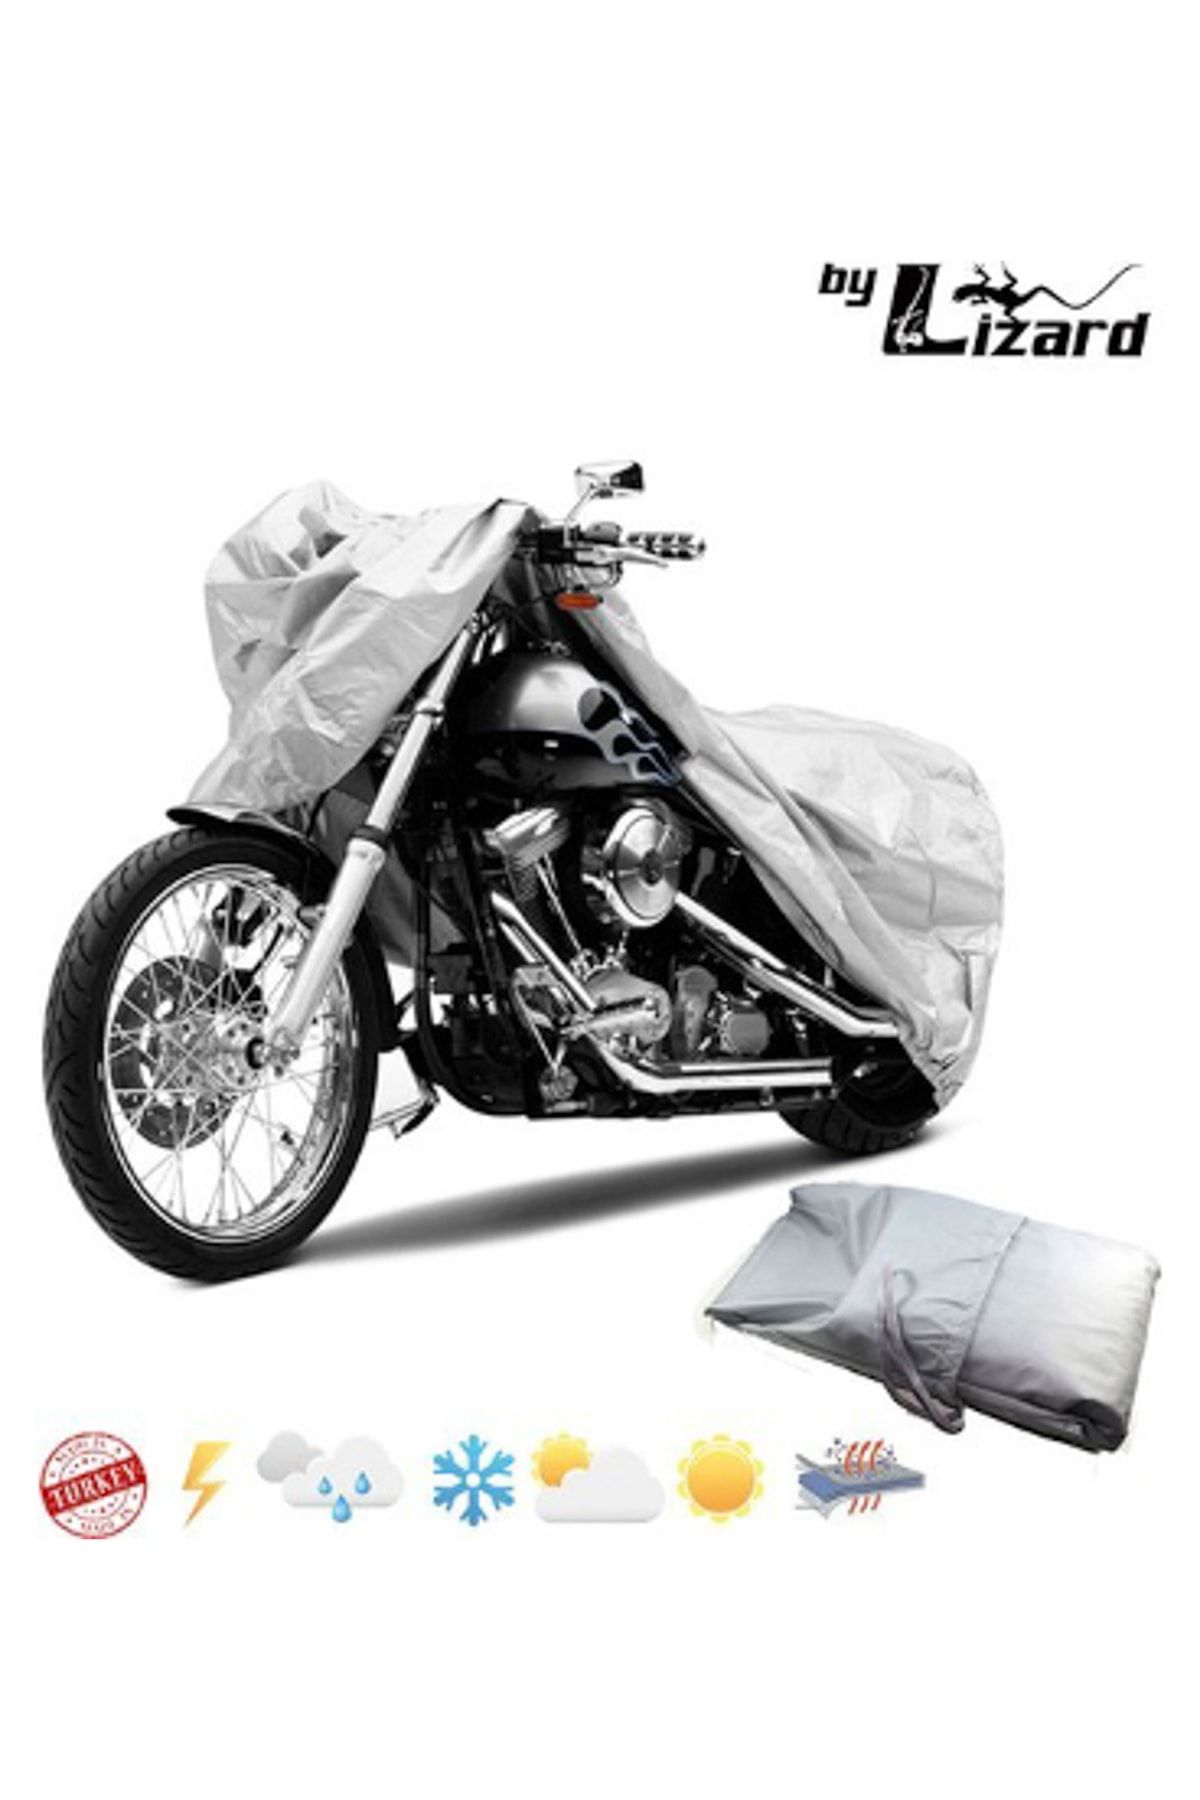 ByLizard Royal Enfield Classic Chrome Motosiklet Brandası, Motor Örtüsü, Çadır